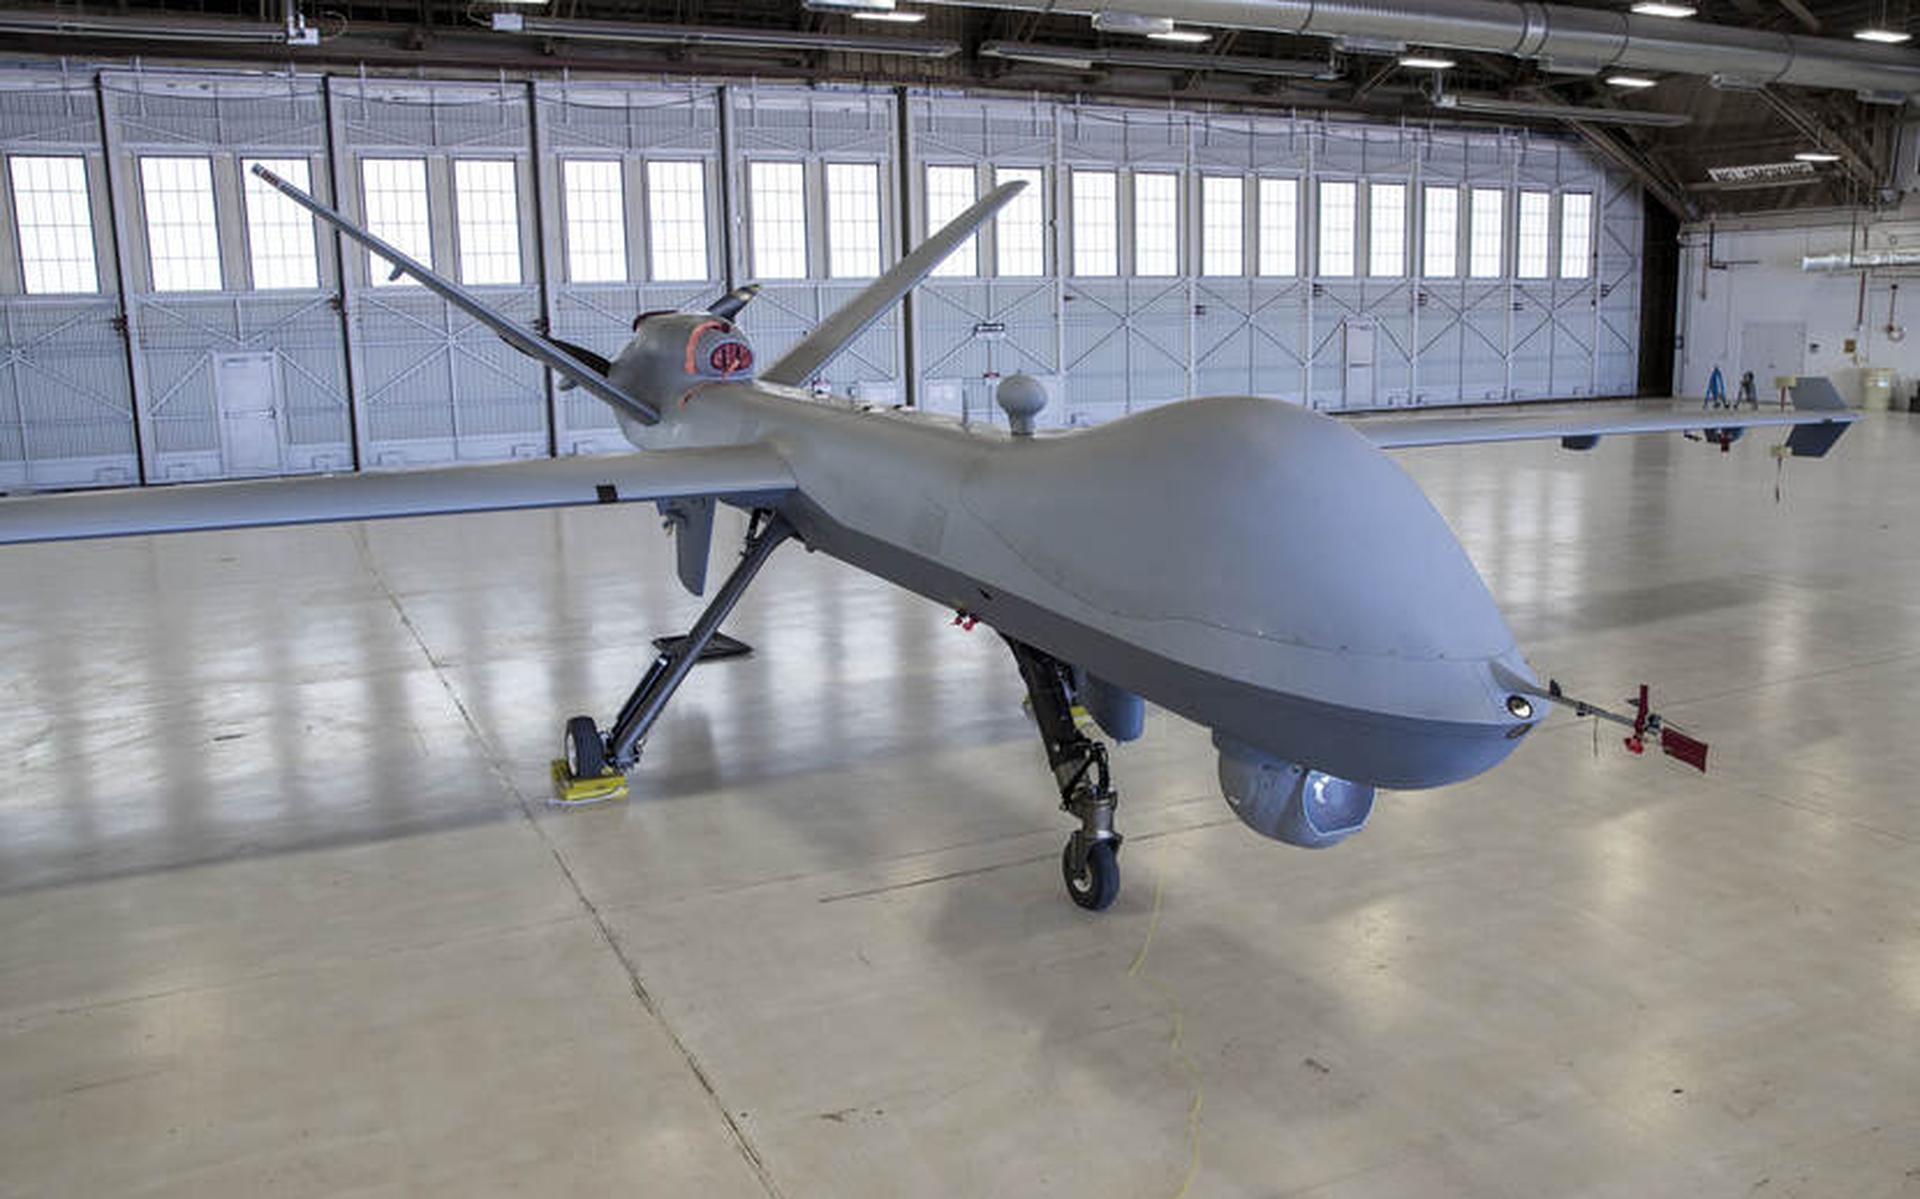 Drone met bom stap dichterbij: 'Misgaan kost alleen materiaal, geen mensenlevens' - Leeuwarder